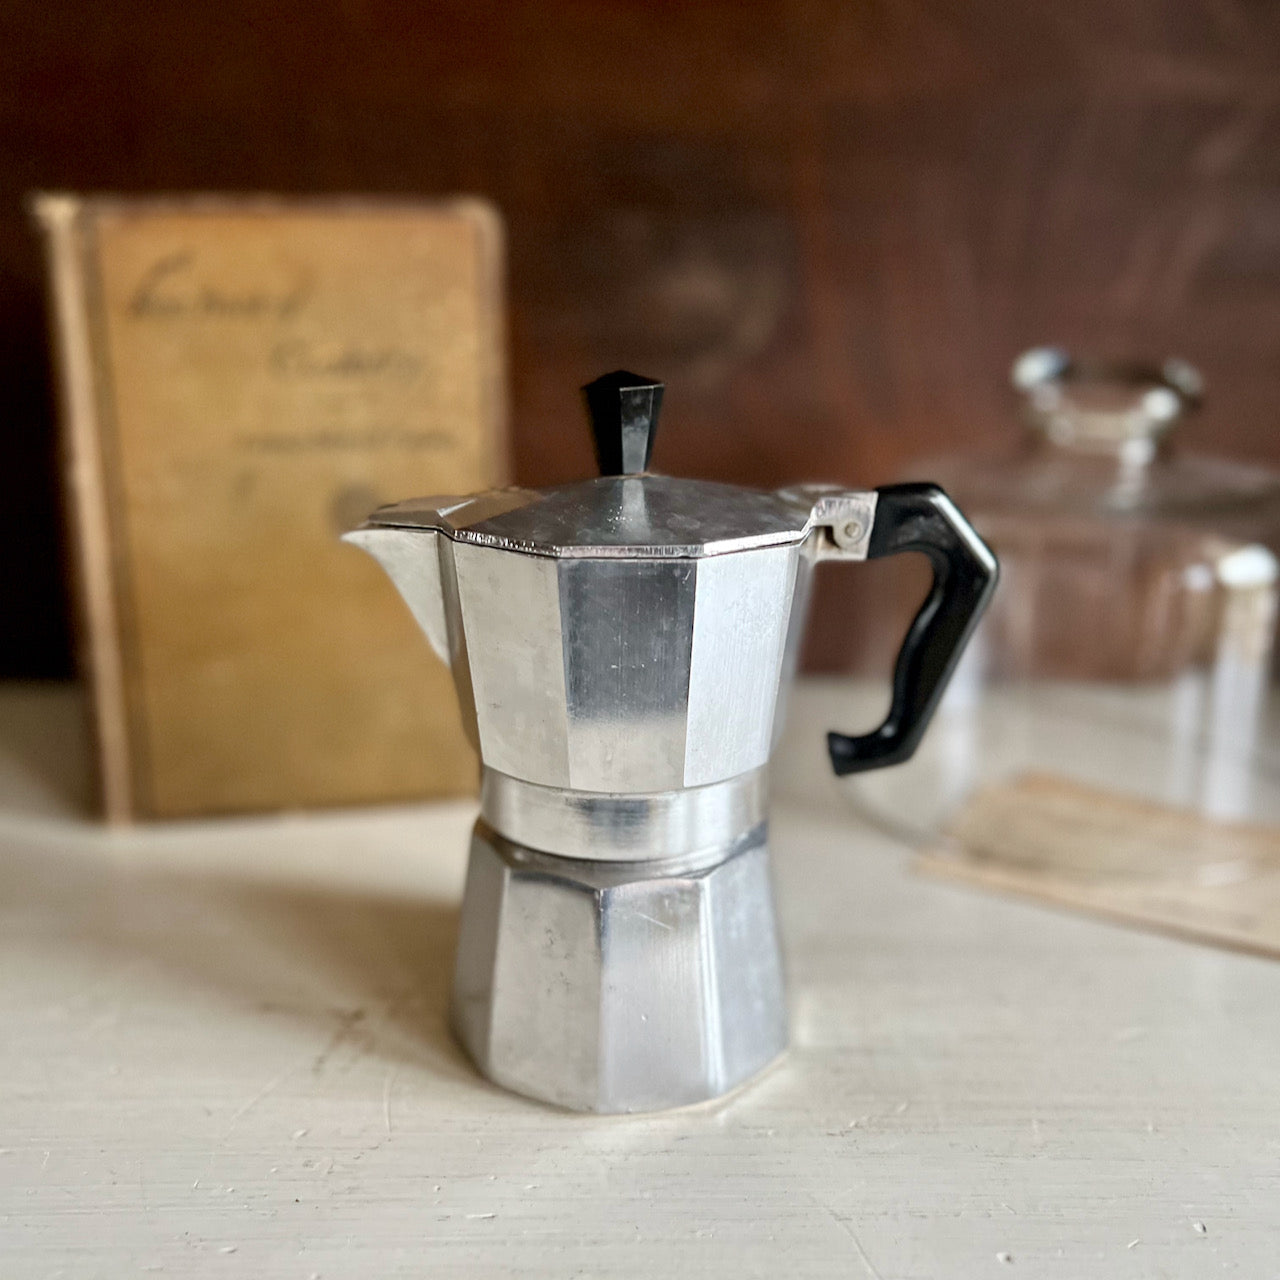 Vintage Primula Express Stovetop Espresso Maker